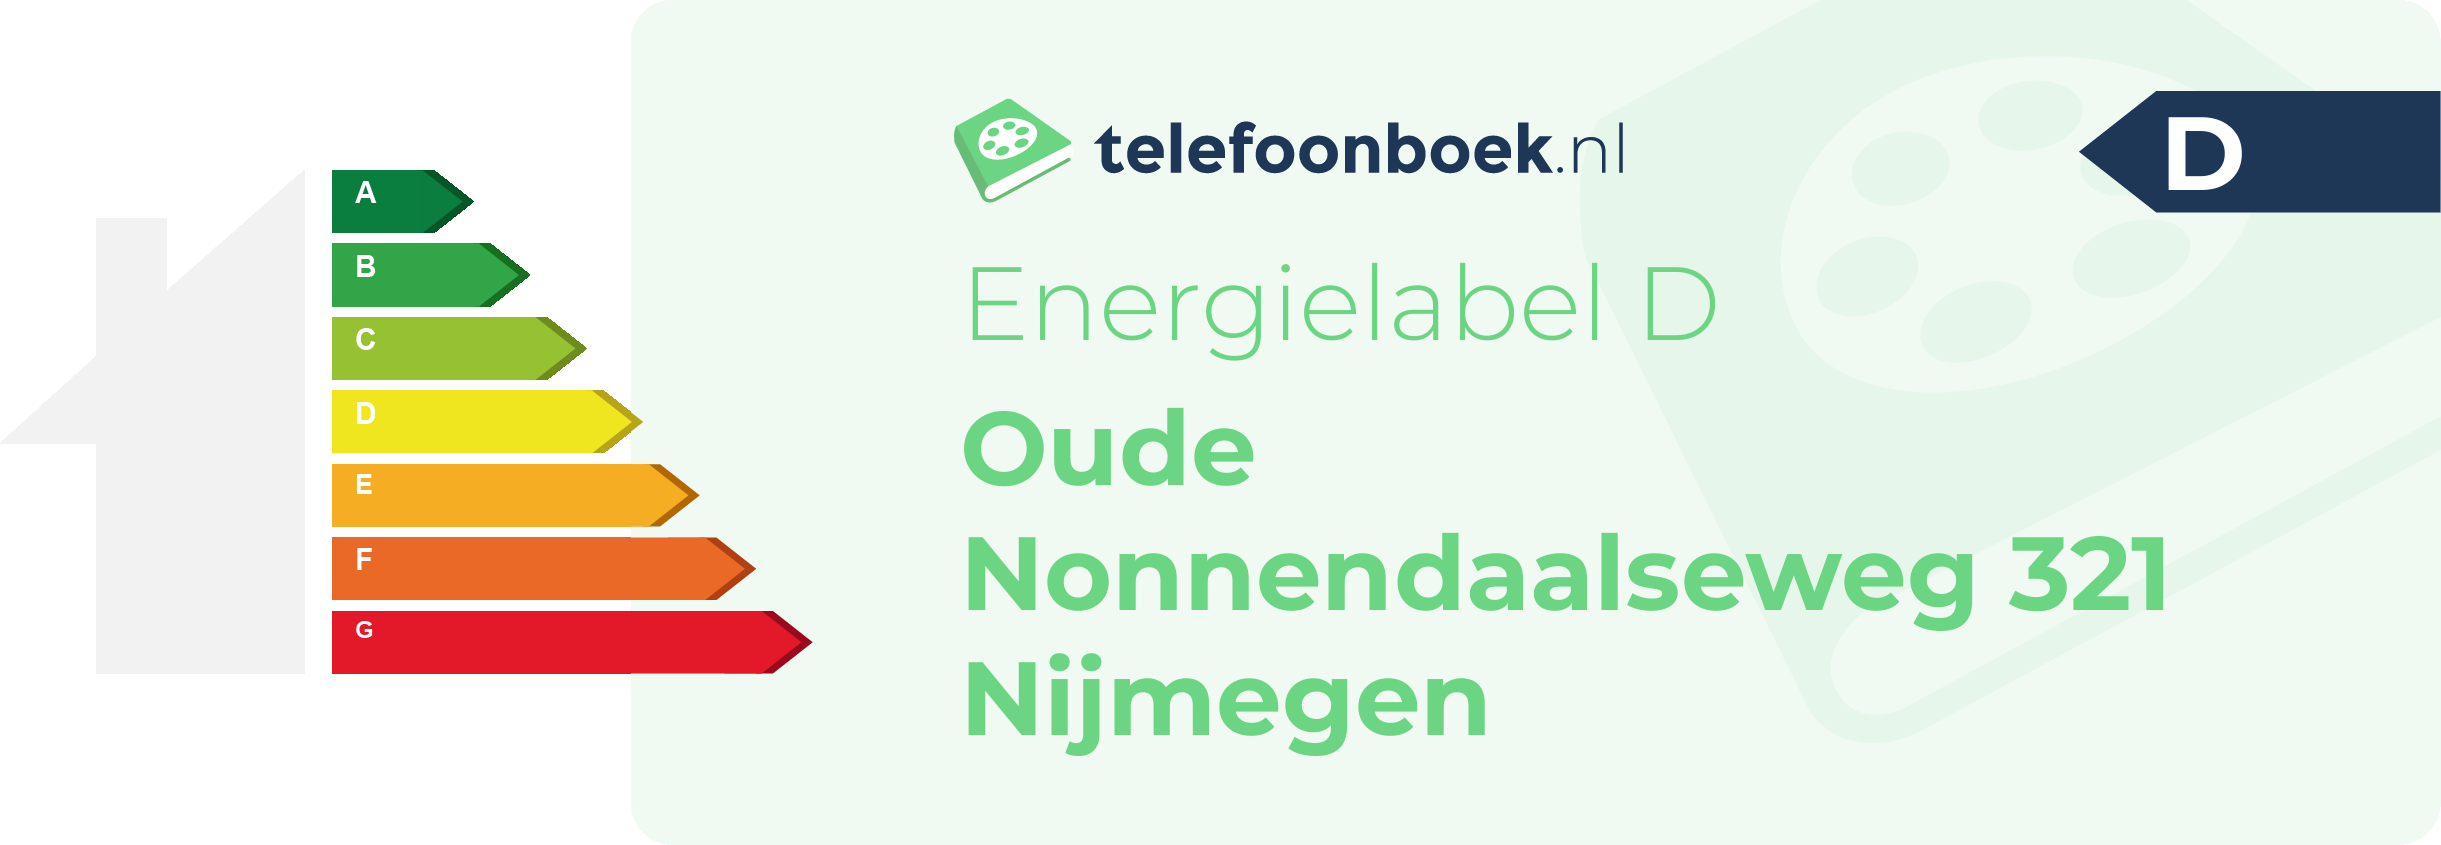 Energielabel Oude Nonnendaalseweg 321 Nijmegen